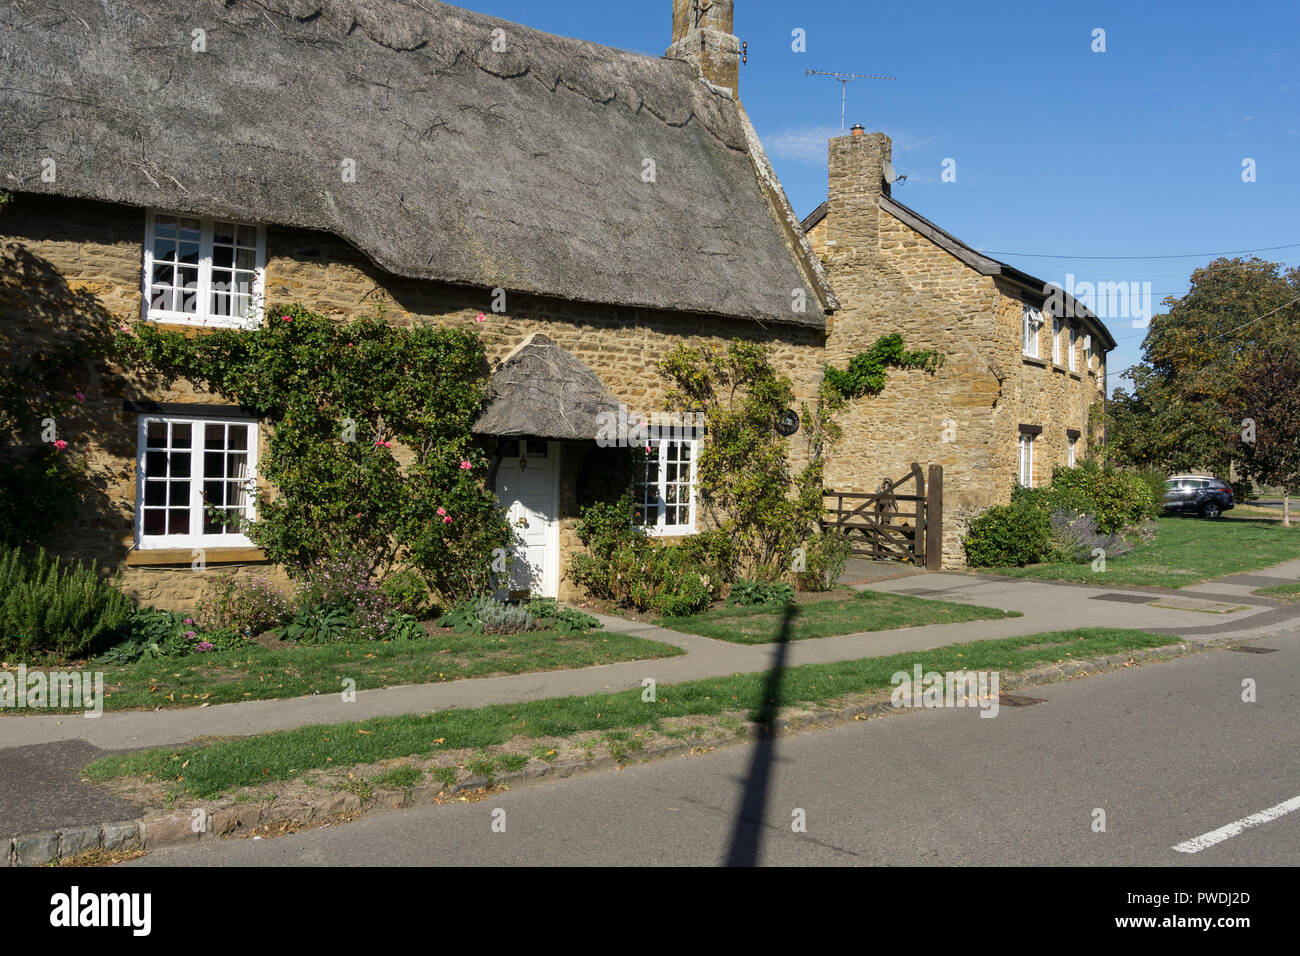 Tradizionale cottage con il tetto di paglia nel grazioso villaggio di Milton Malsor, Northamptonshire, Regno Unito Foto Stock